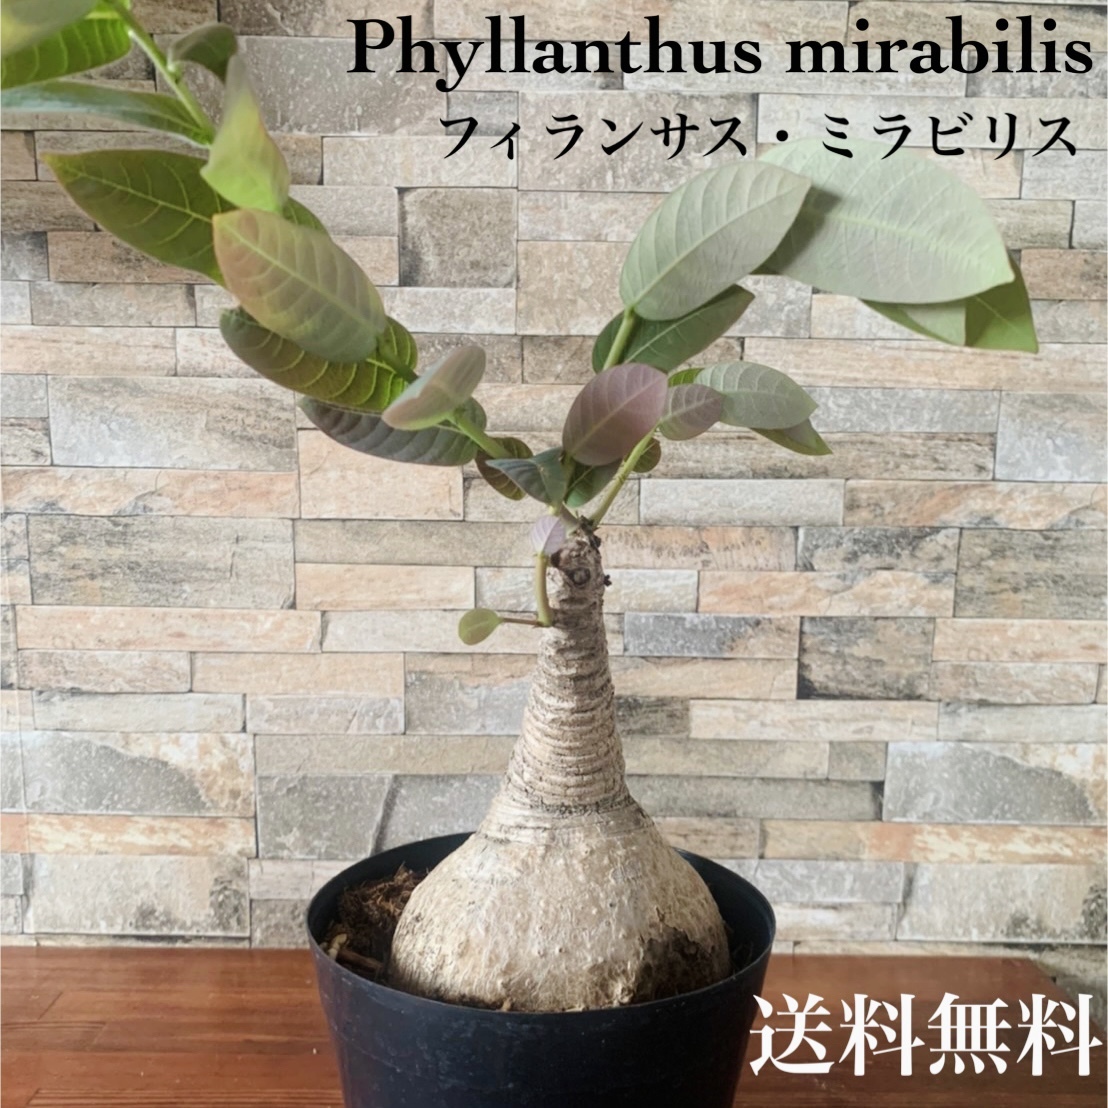 日本産 フィランサス ミラビリス 塊根植物 コーデックス Phyllanthus Mirabilis観葉植物 多肉植物 おしゃれ エキゾチック レア 珍 植物 送料無料 Fucoa Cl